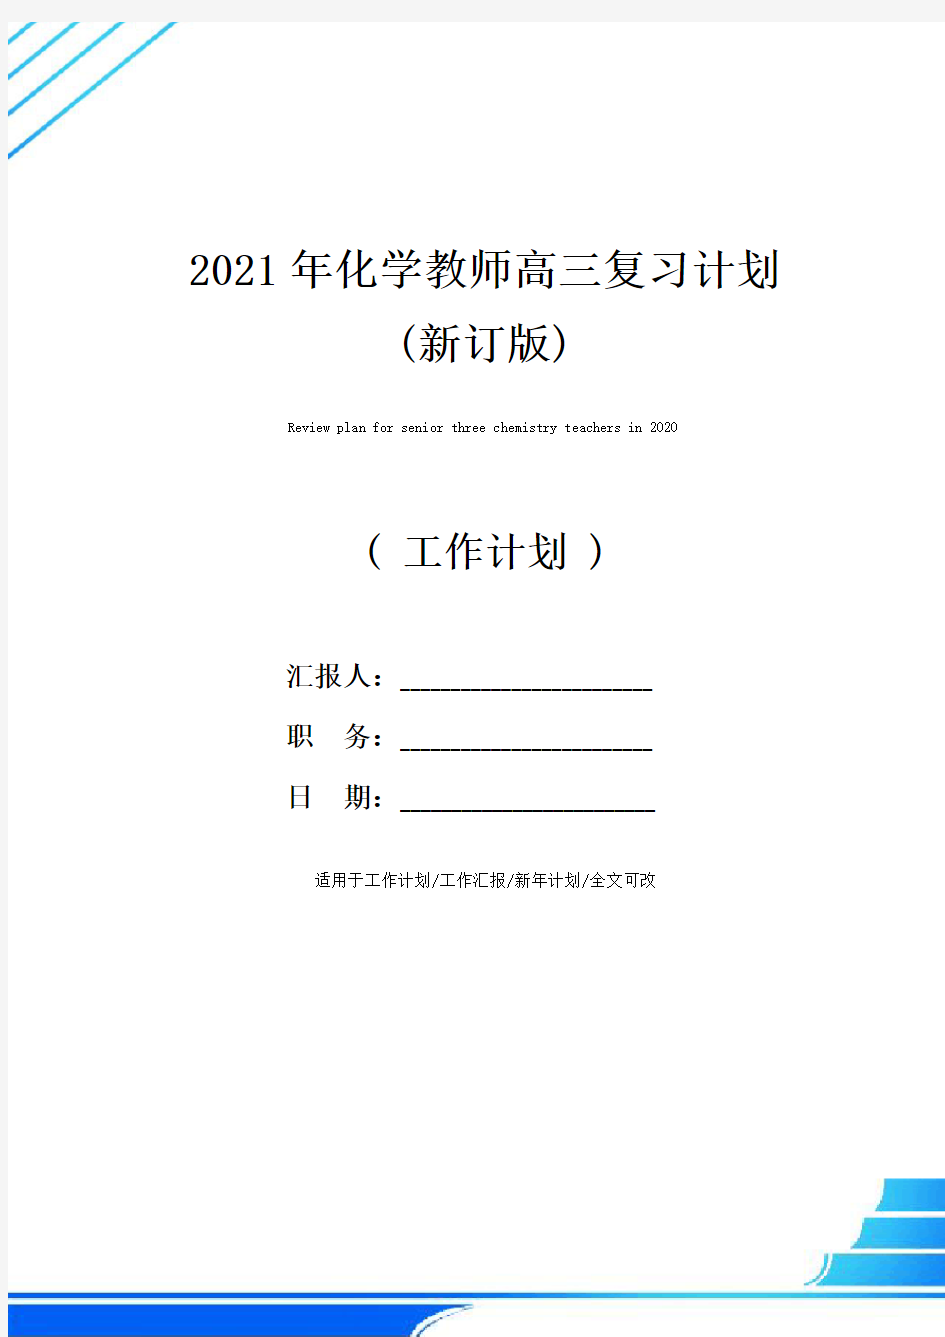 2021年化学教师高三复习计划(新订版)